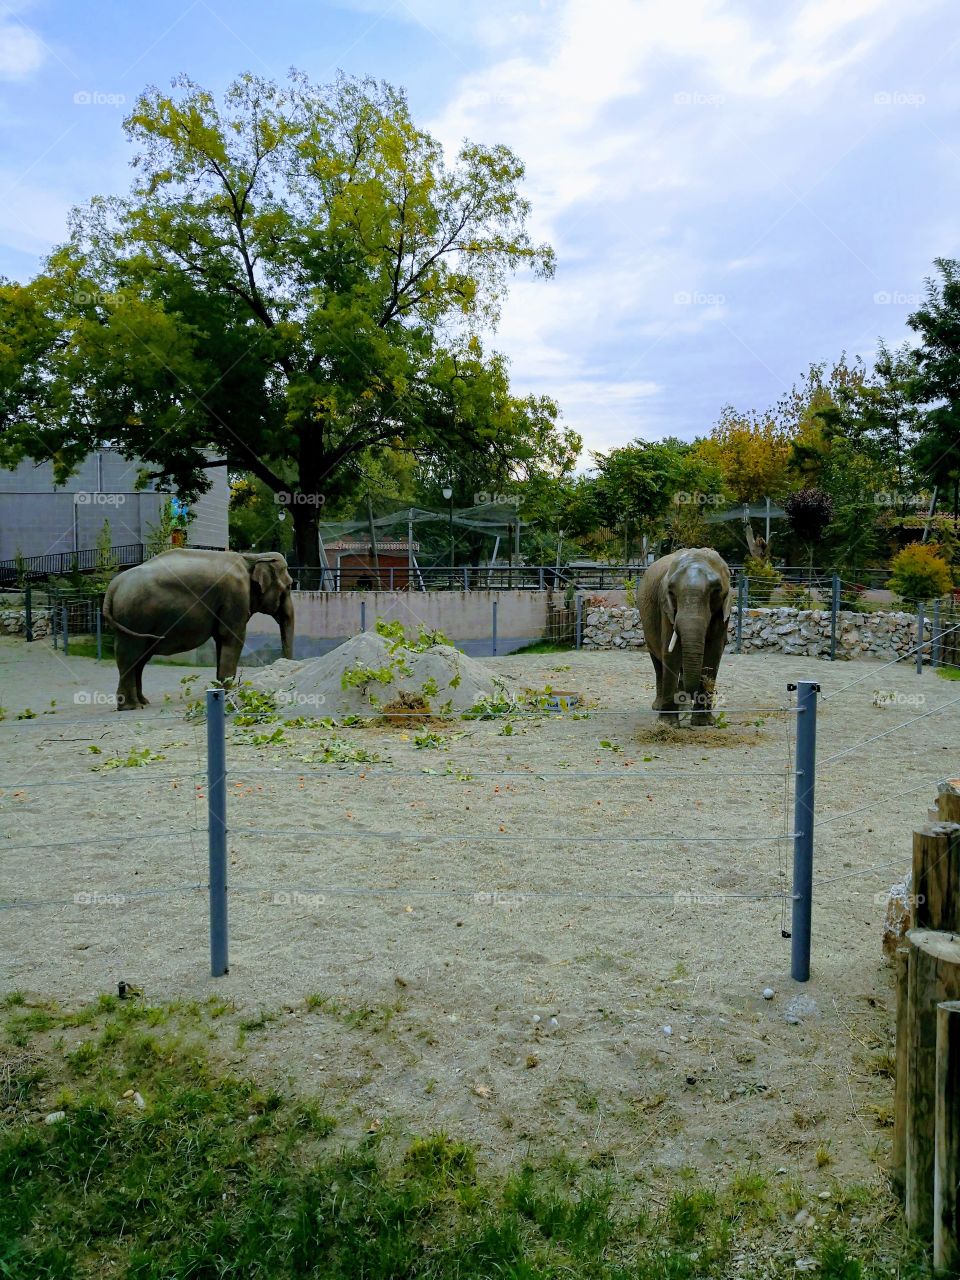 Skopje Zoo. The elephants Dunja and Daela.